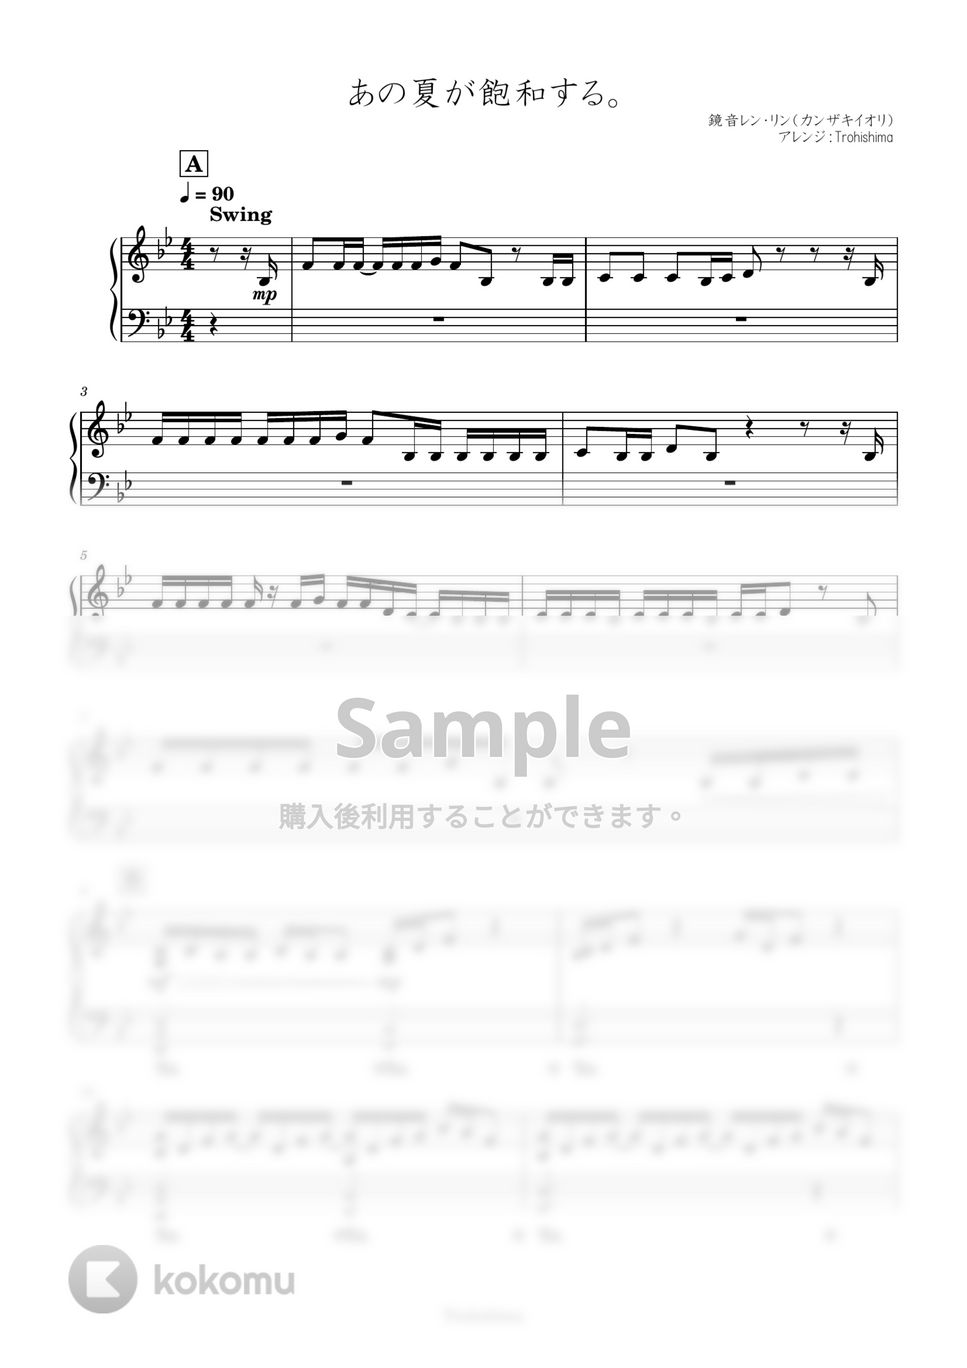 鏡音レン・リン - あの夏が飽和する。 (カンザキイオリ作詞作曲) by Trohishima